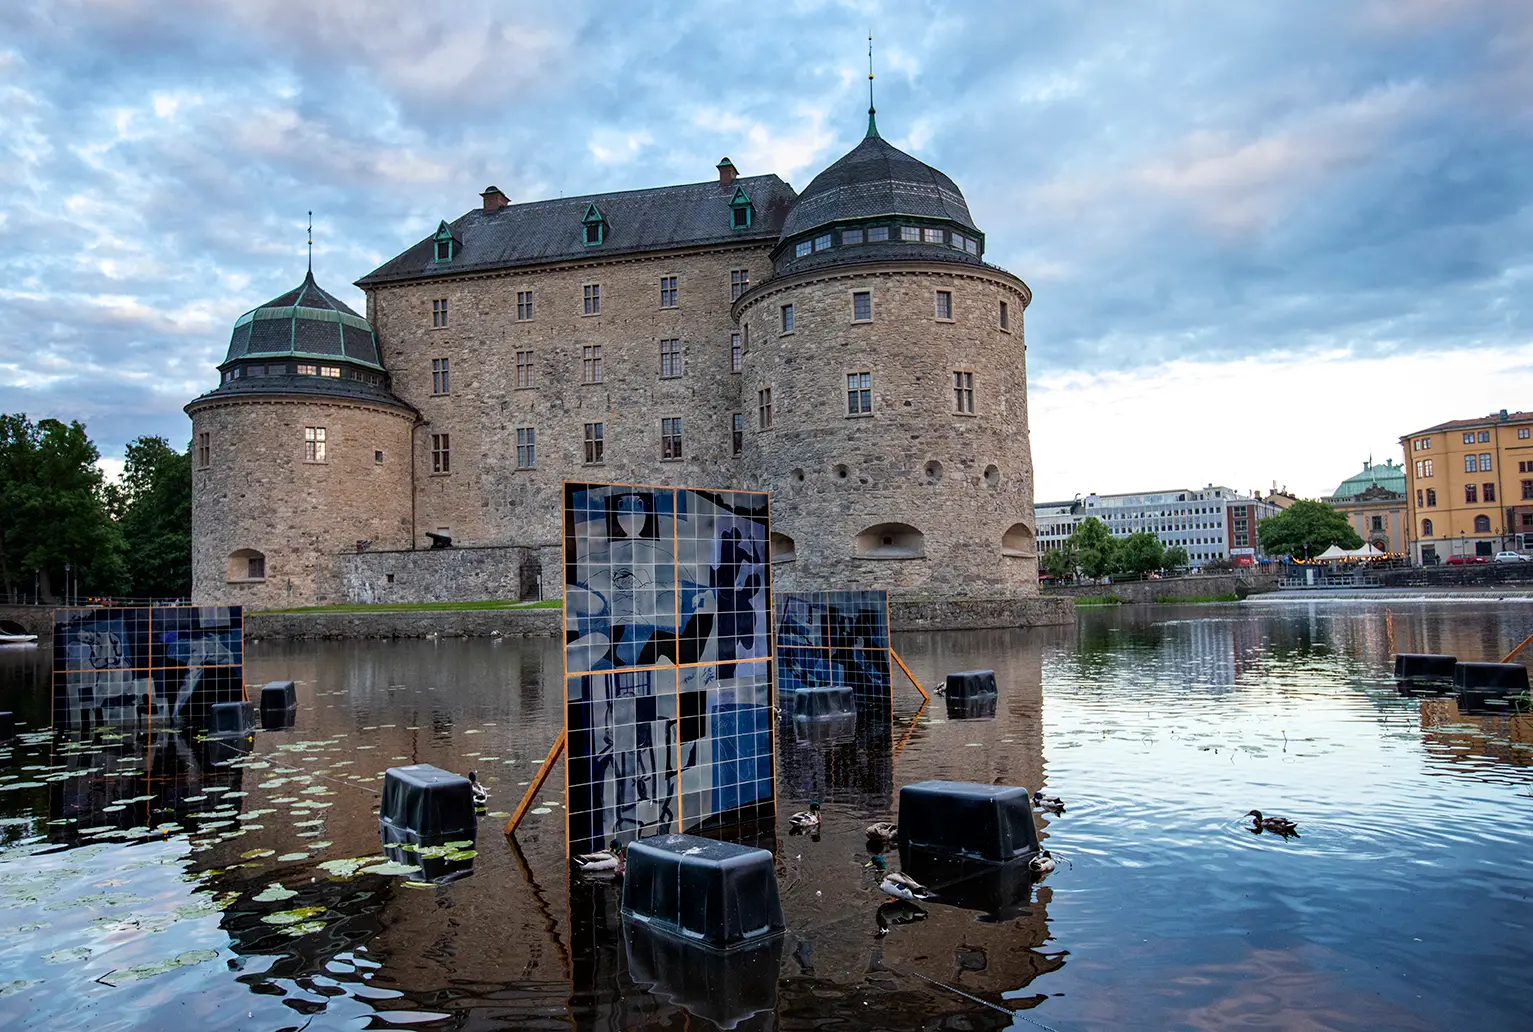 Översiktsbild på tavlor gjorda av keramikplattor som står placerade i vattnet runt Örebro slott. Keramikplattorna är olika nyanser av blå och det syns också manskroppar på bidlerna.